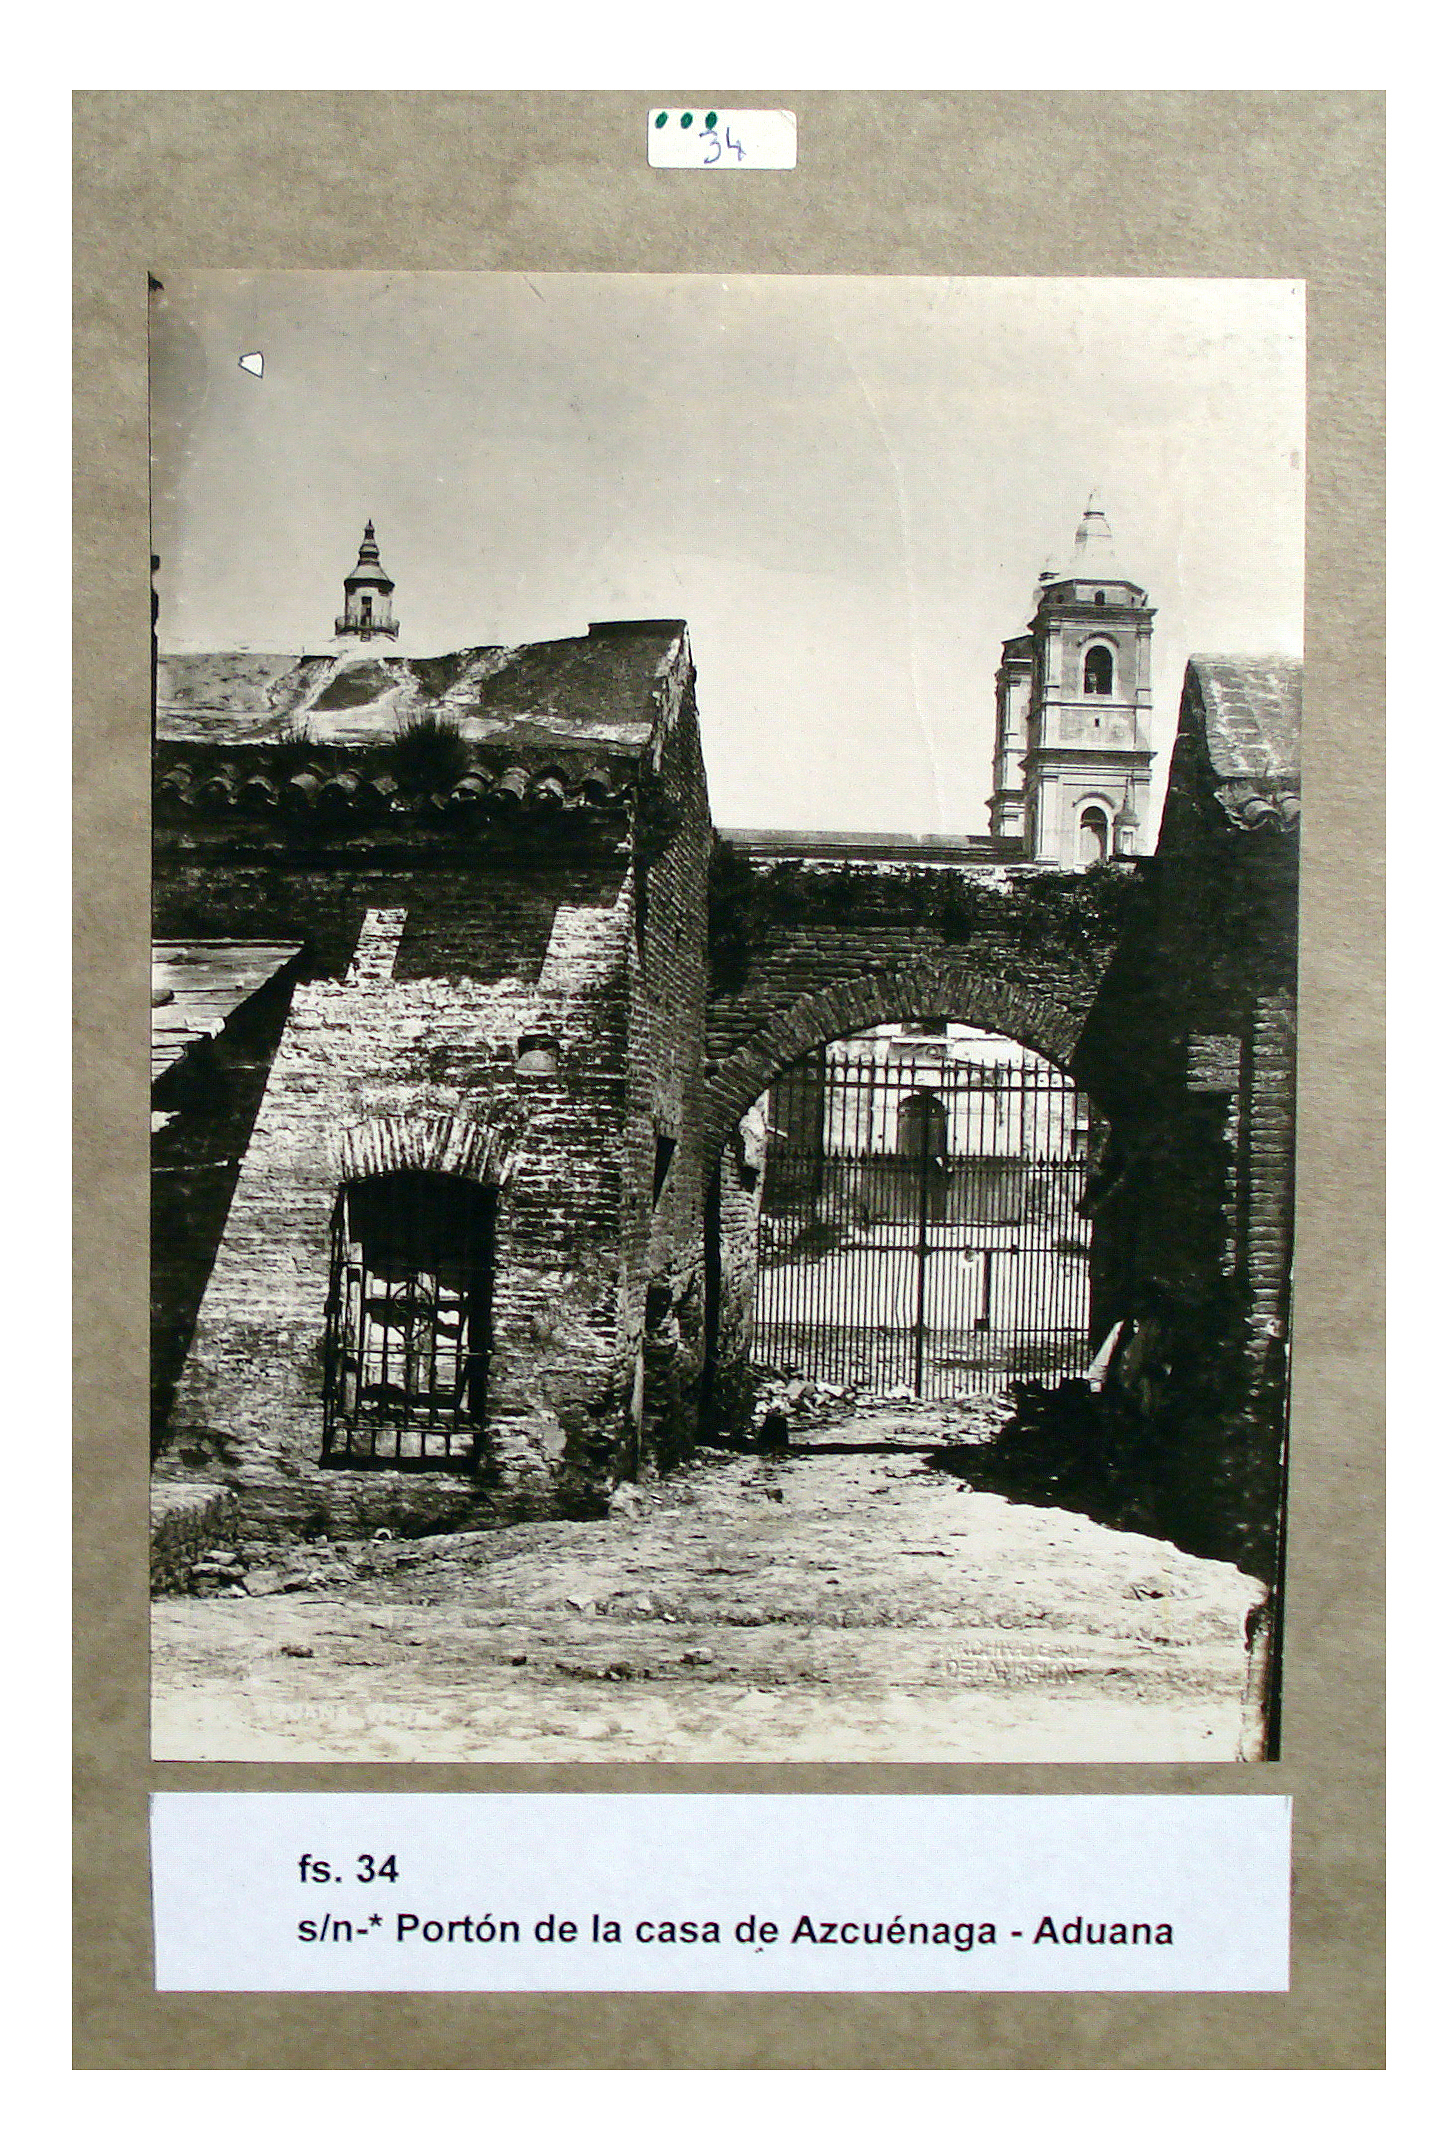 Portón de Azcuénaga